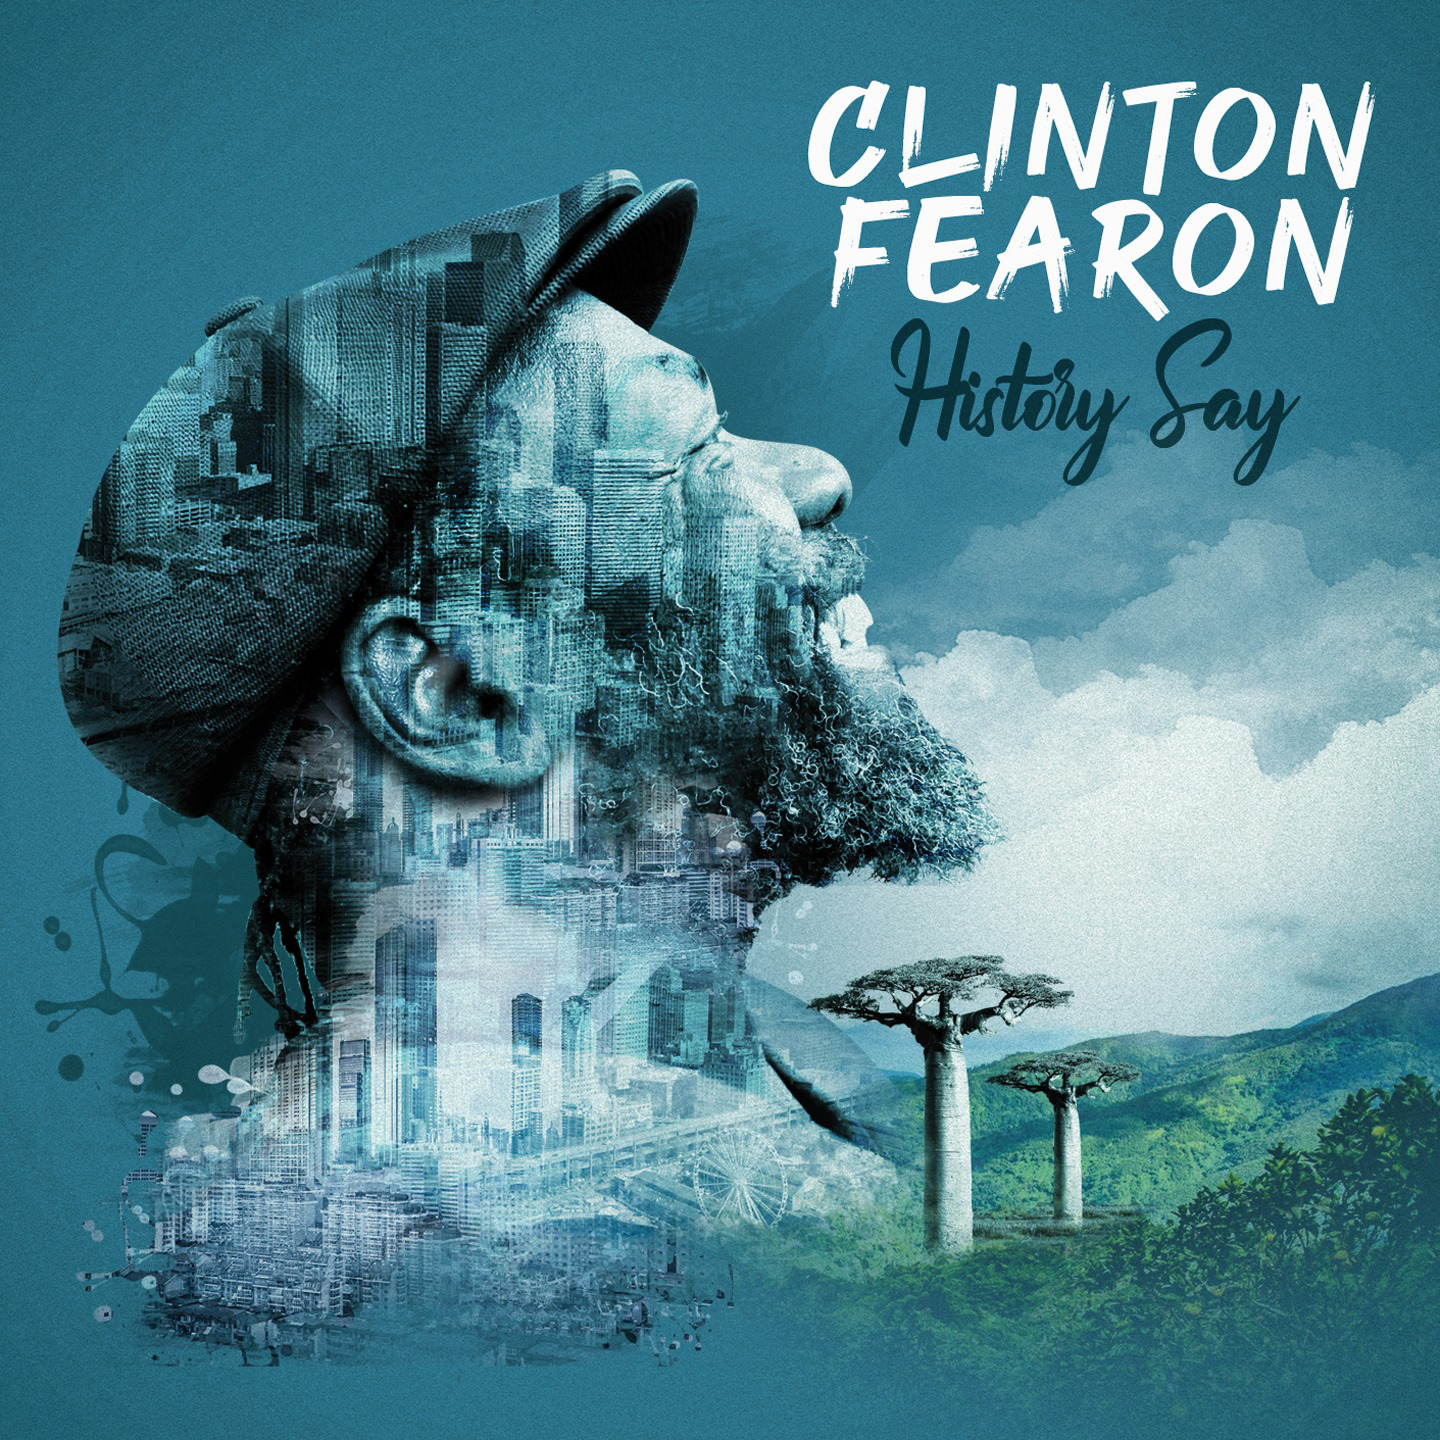 Cover de l'album Clinton Fearon - History Say. Réalisé par Loseou